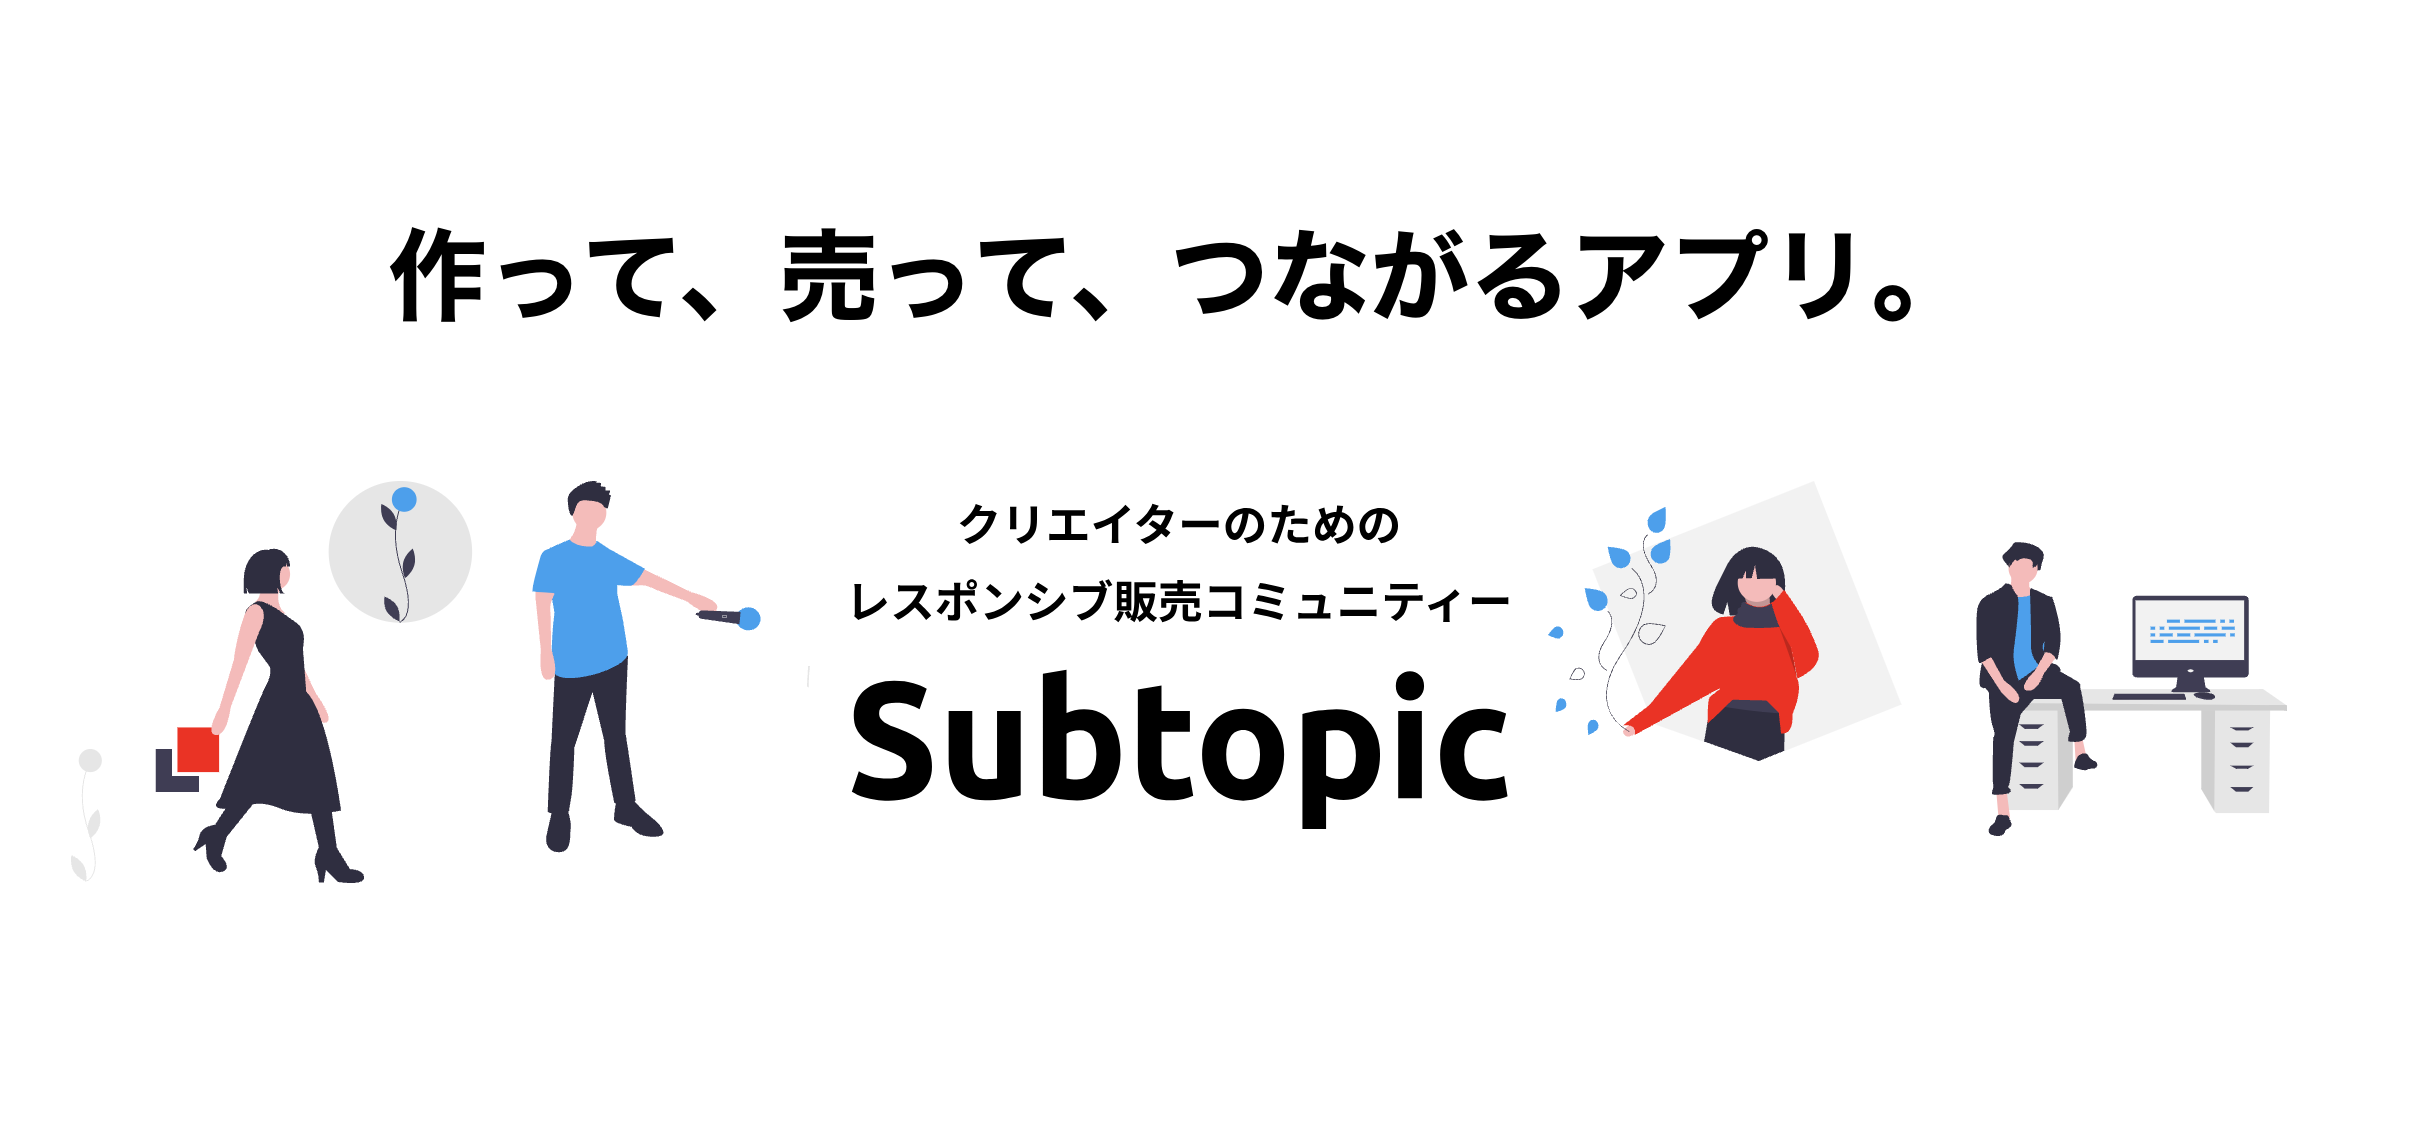 subtopic